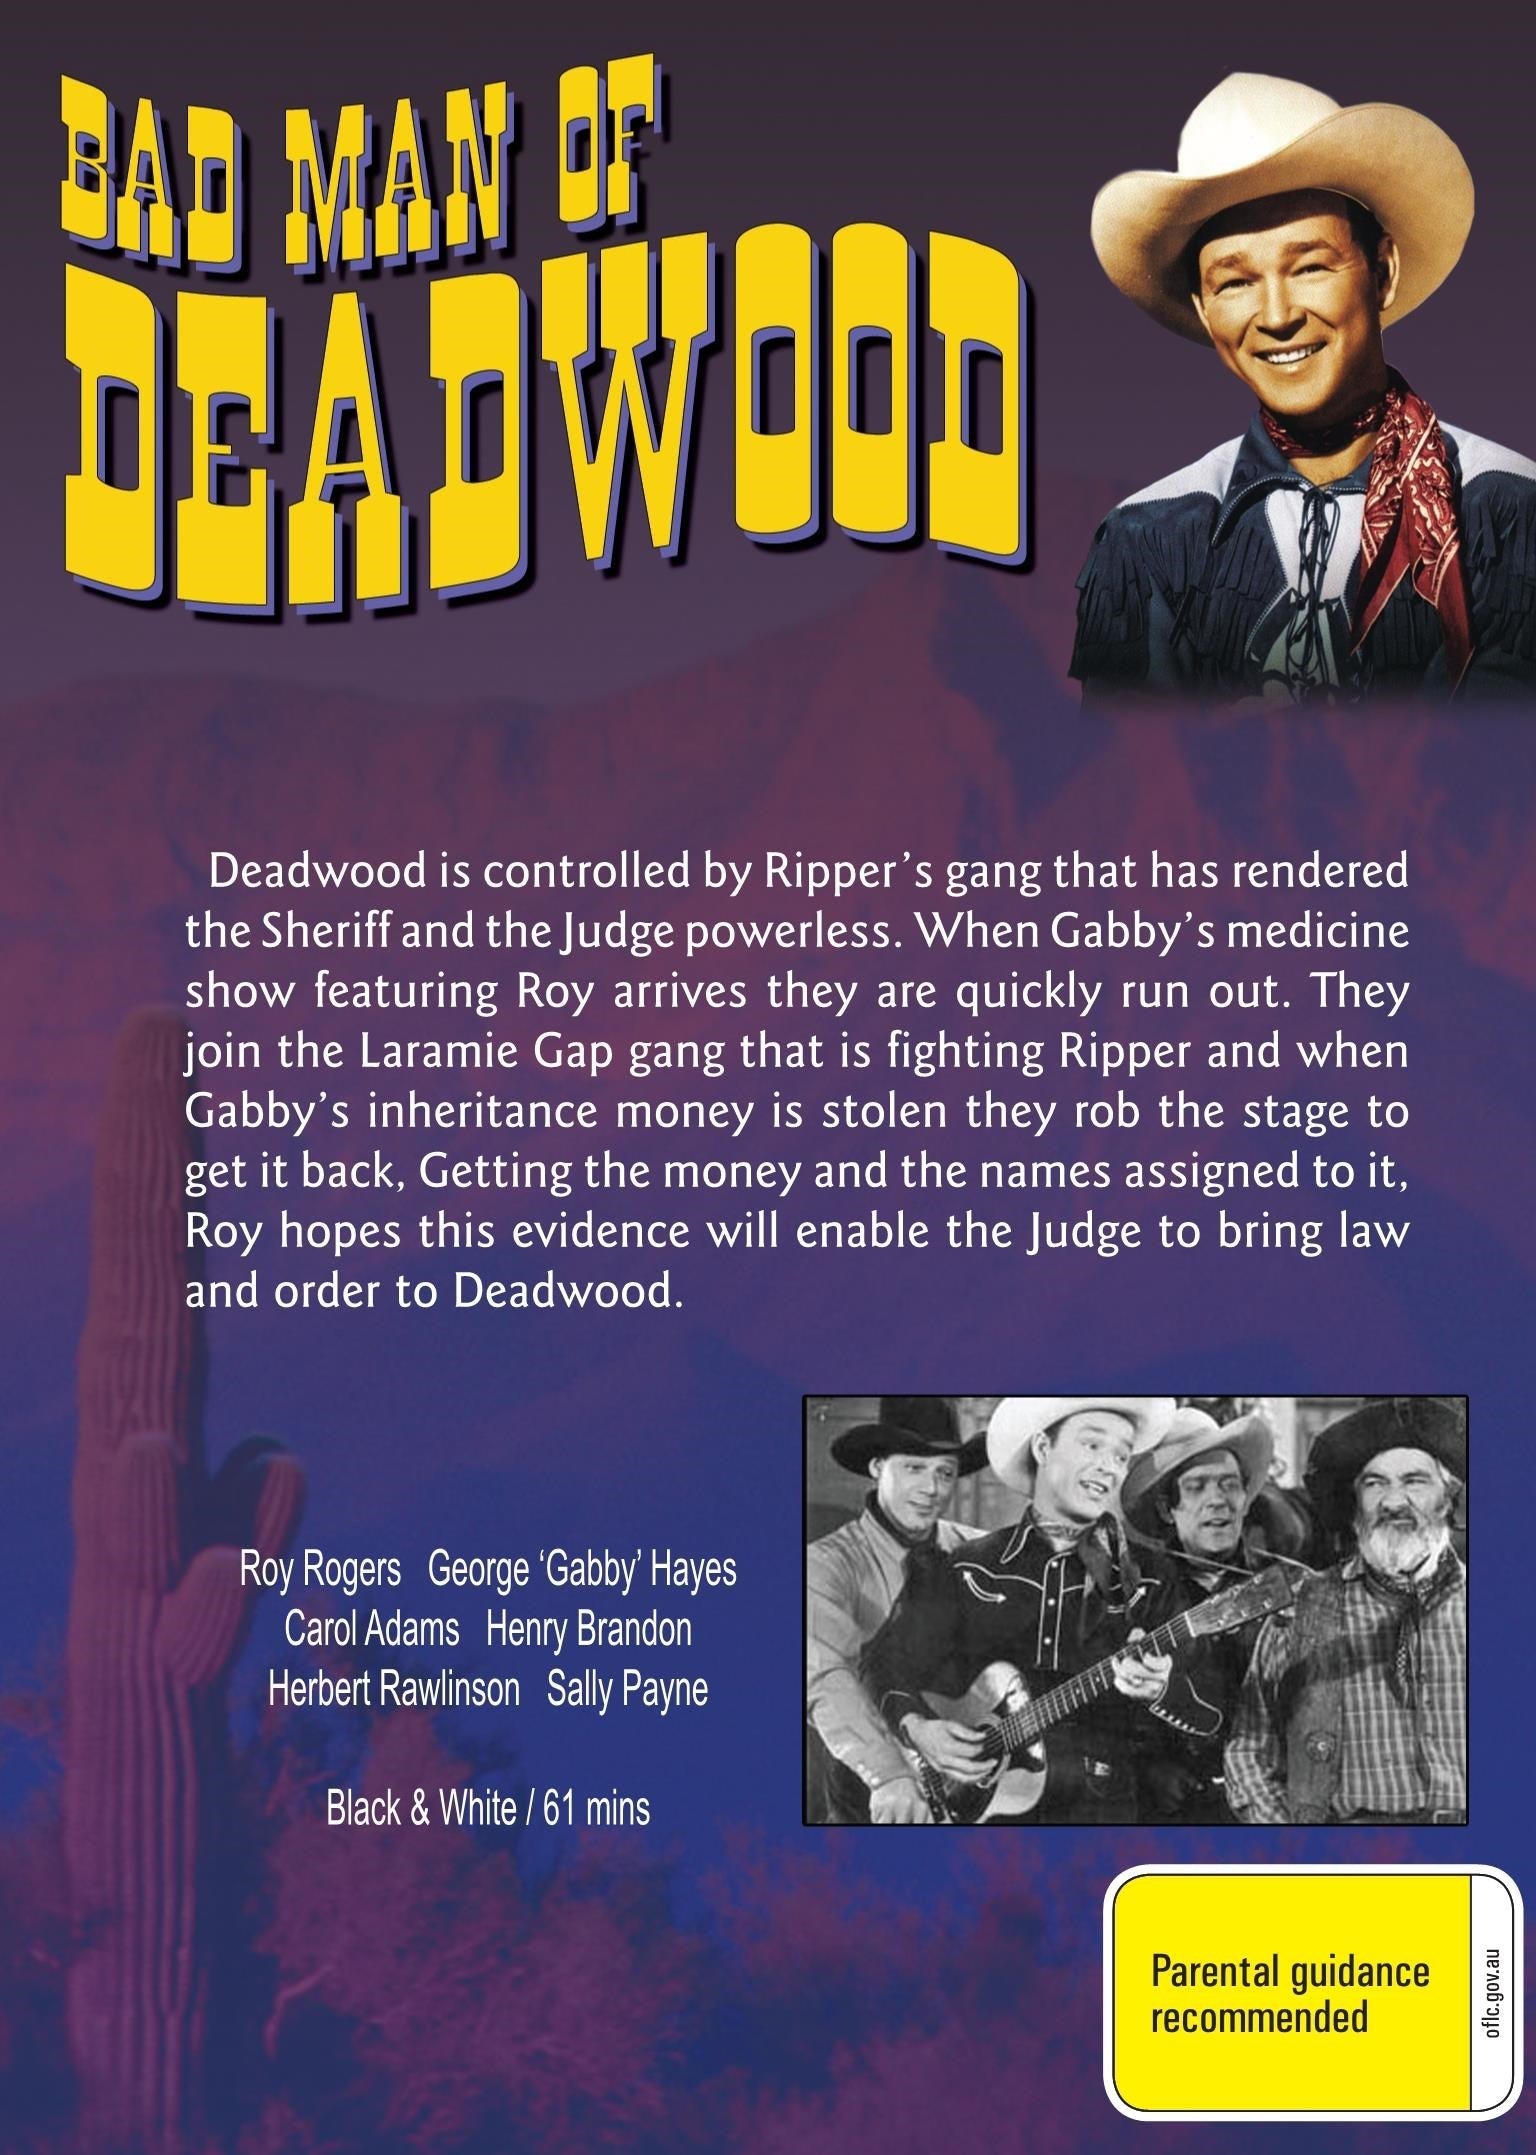 Bad Man of Deadwood rareandcollectibledvds